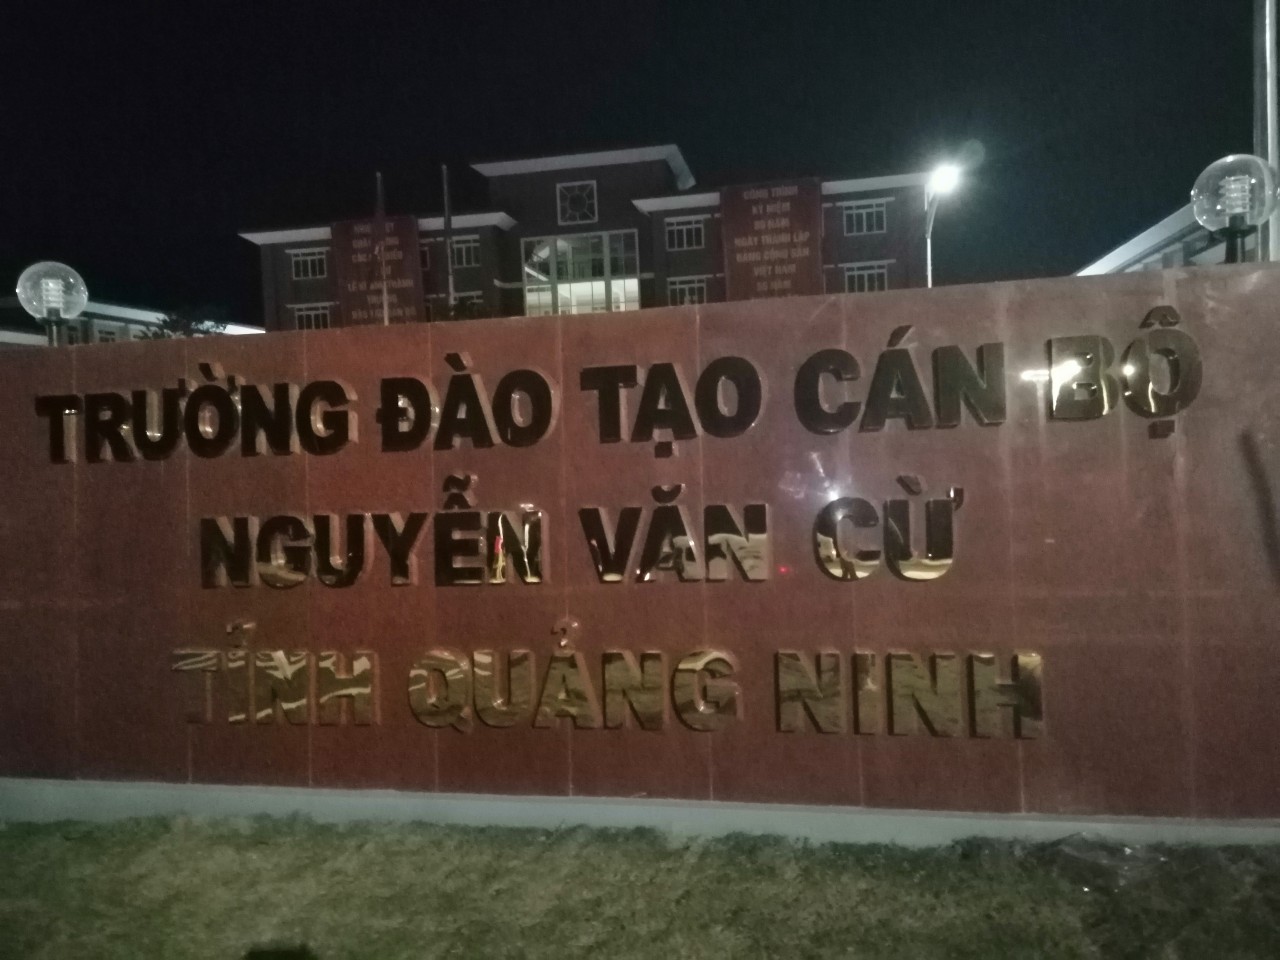 ÂM THANH HỘI TRƯỜNG: Trường Đào tạo cán bộ Nguyễn Văn Cừ, Quảng Ninh